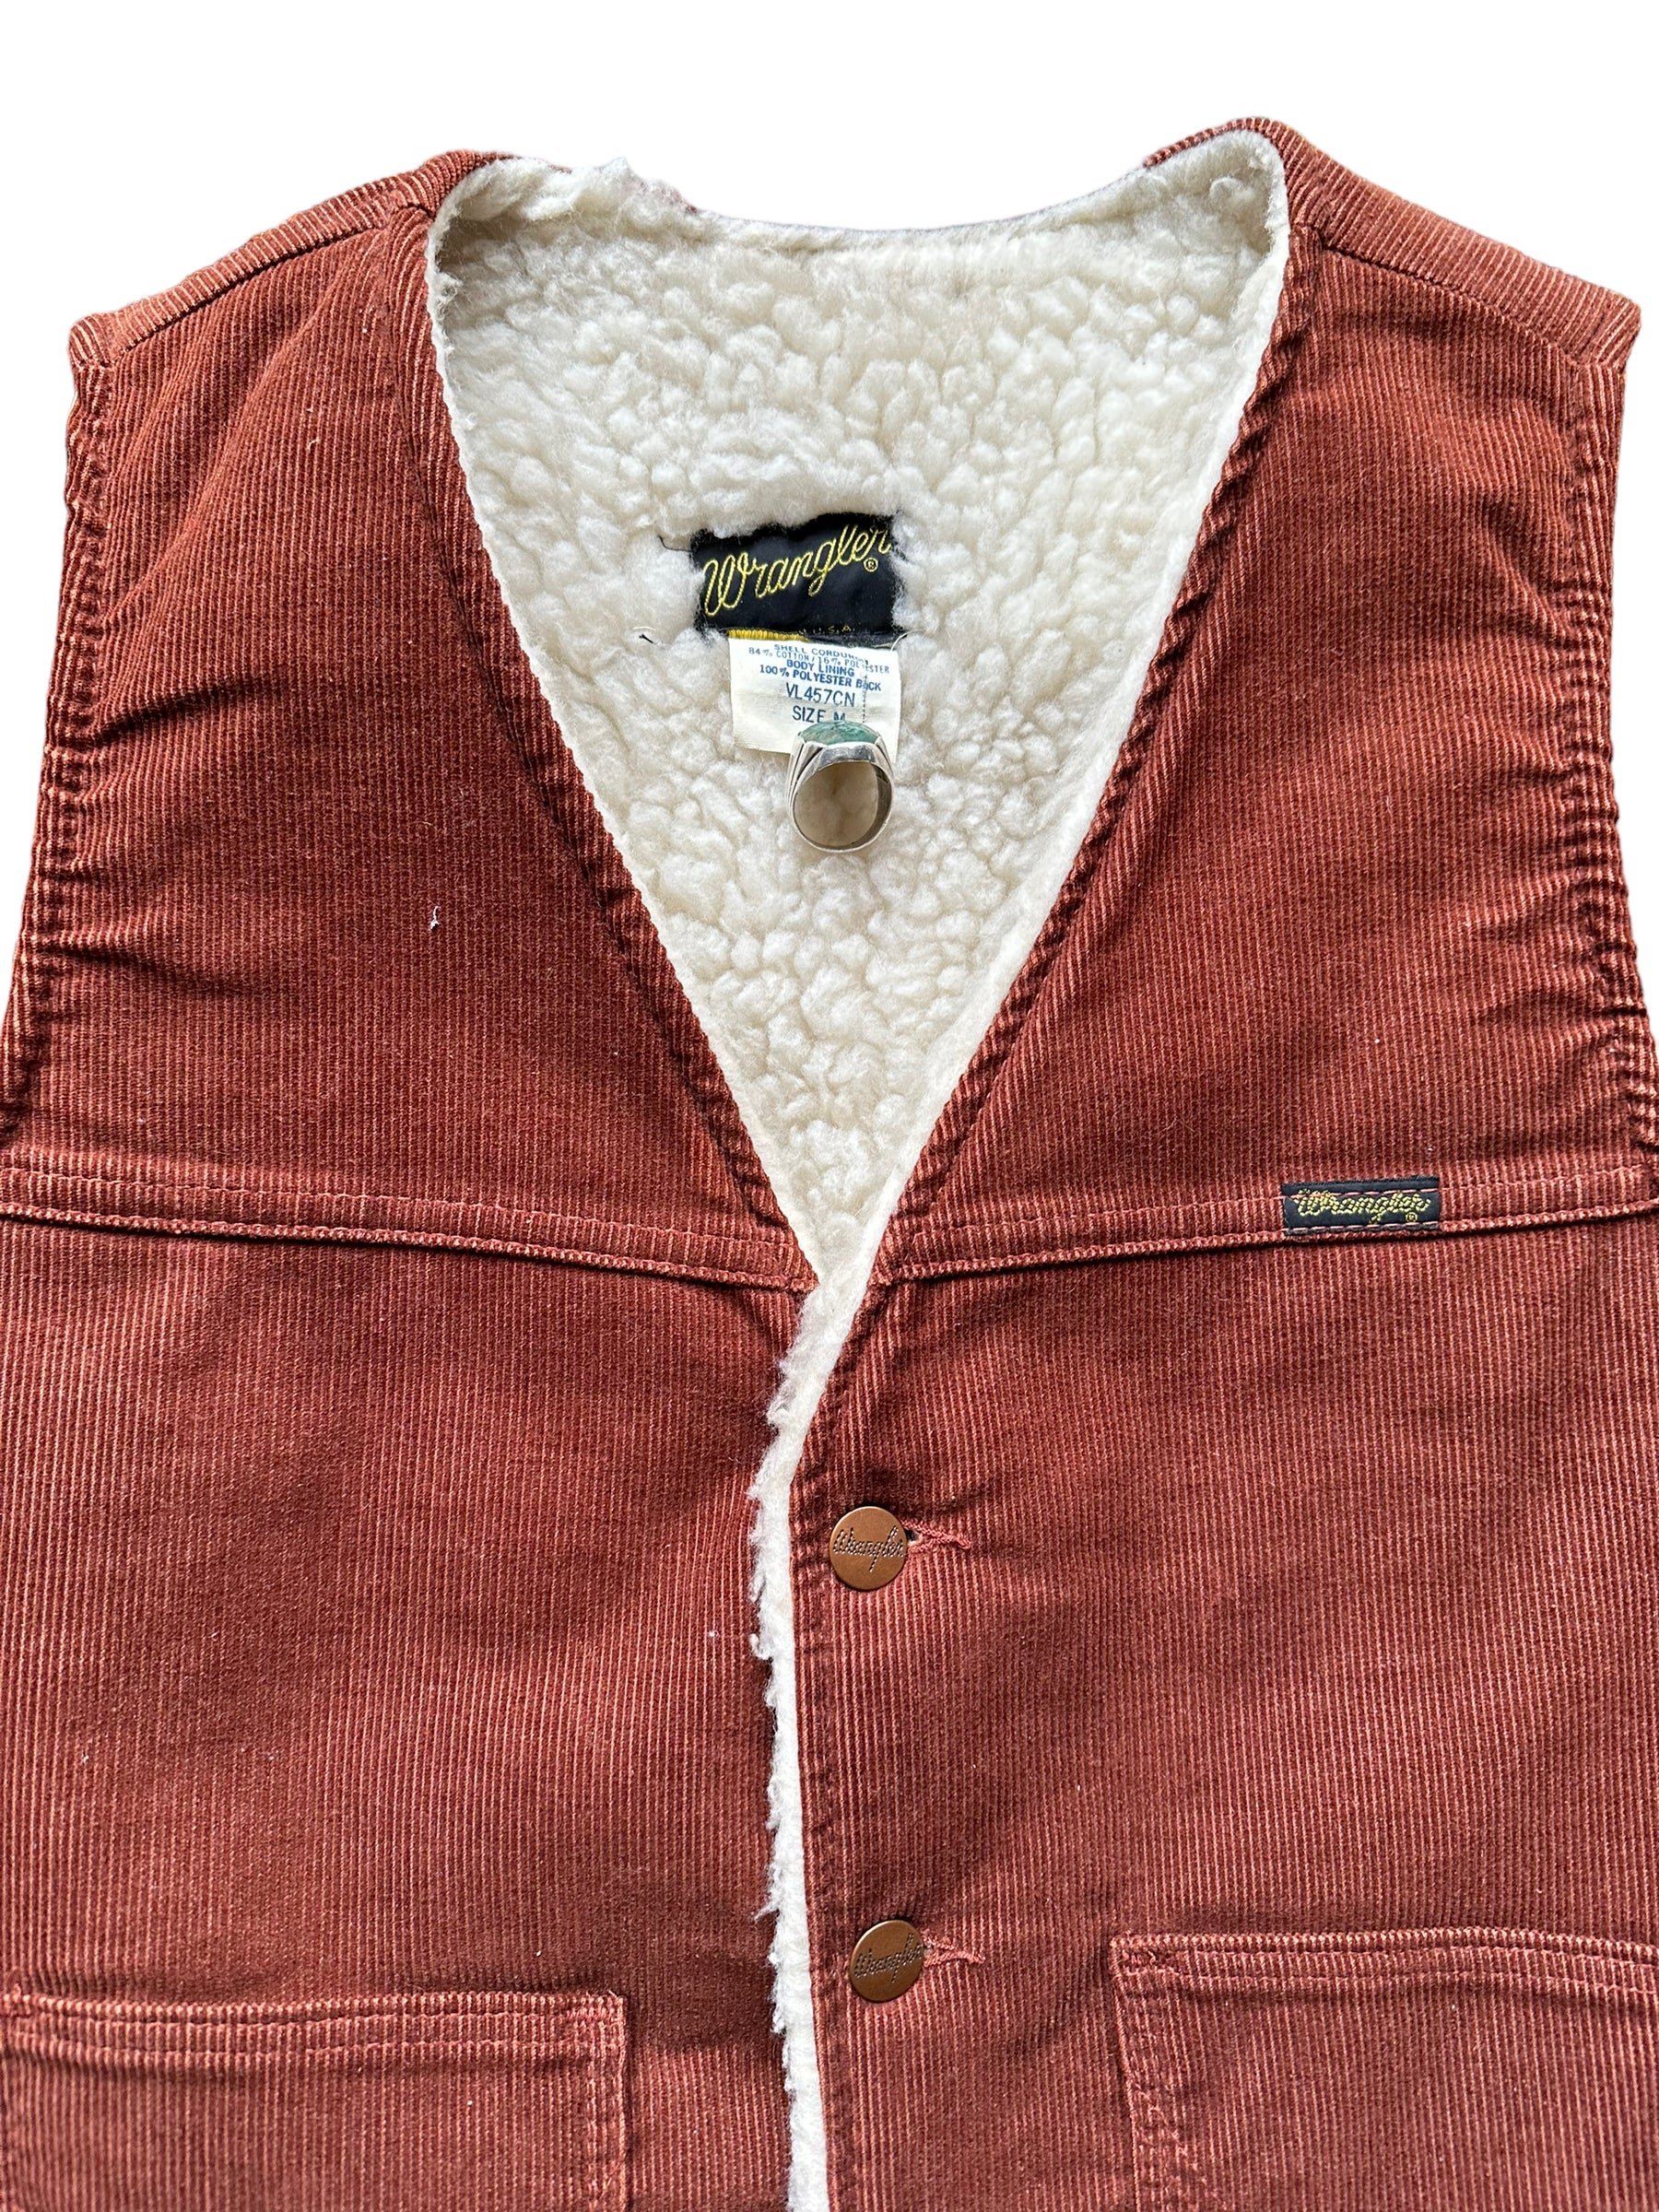 Upper Front View of Vintage Rust Colored Wrangler Shearling Vest SZ M | Vintage Sherpa Vest Seattle | Barn Owl Vintage Seattle